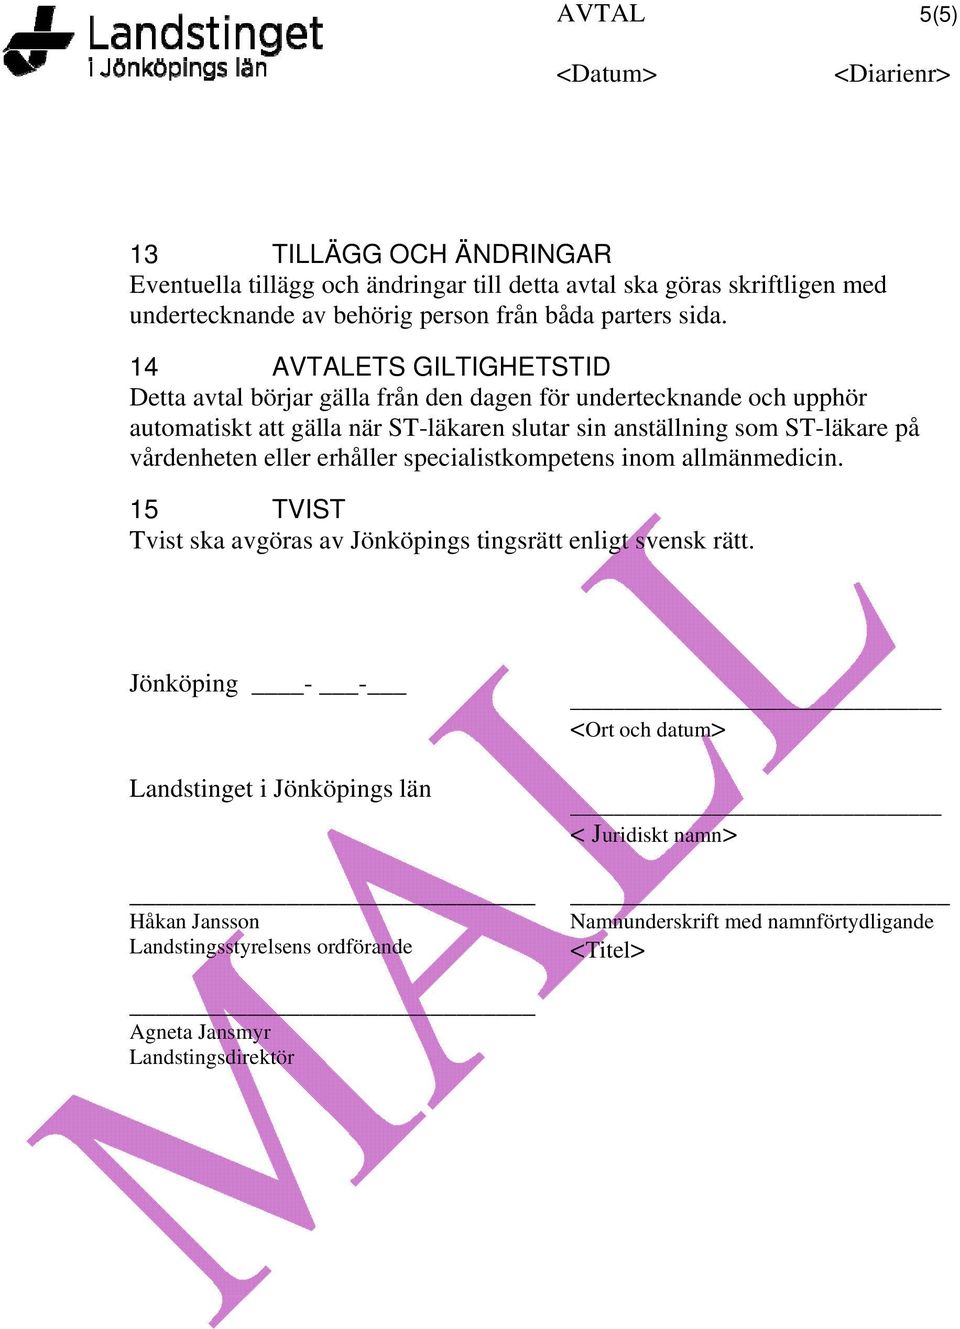 på vårdenheten eller erhåller specialistkompetens inom allmänmedicin. 15 TVIST Tvist ska avgöras av Jönköpings tingsrätt enligt svensk rätt.